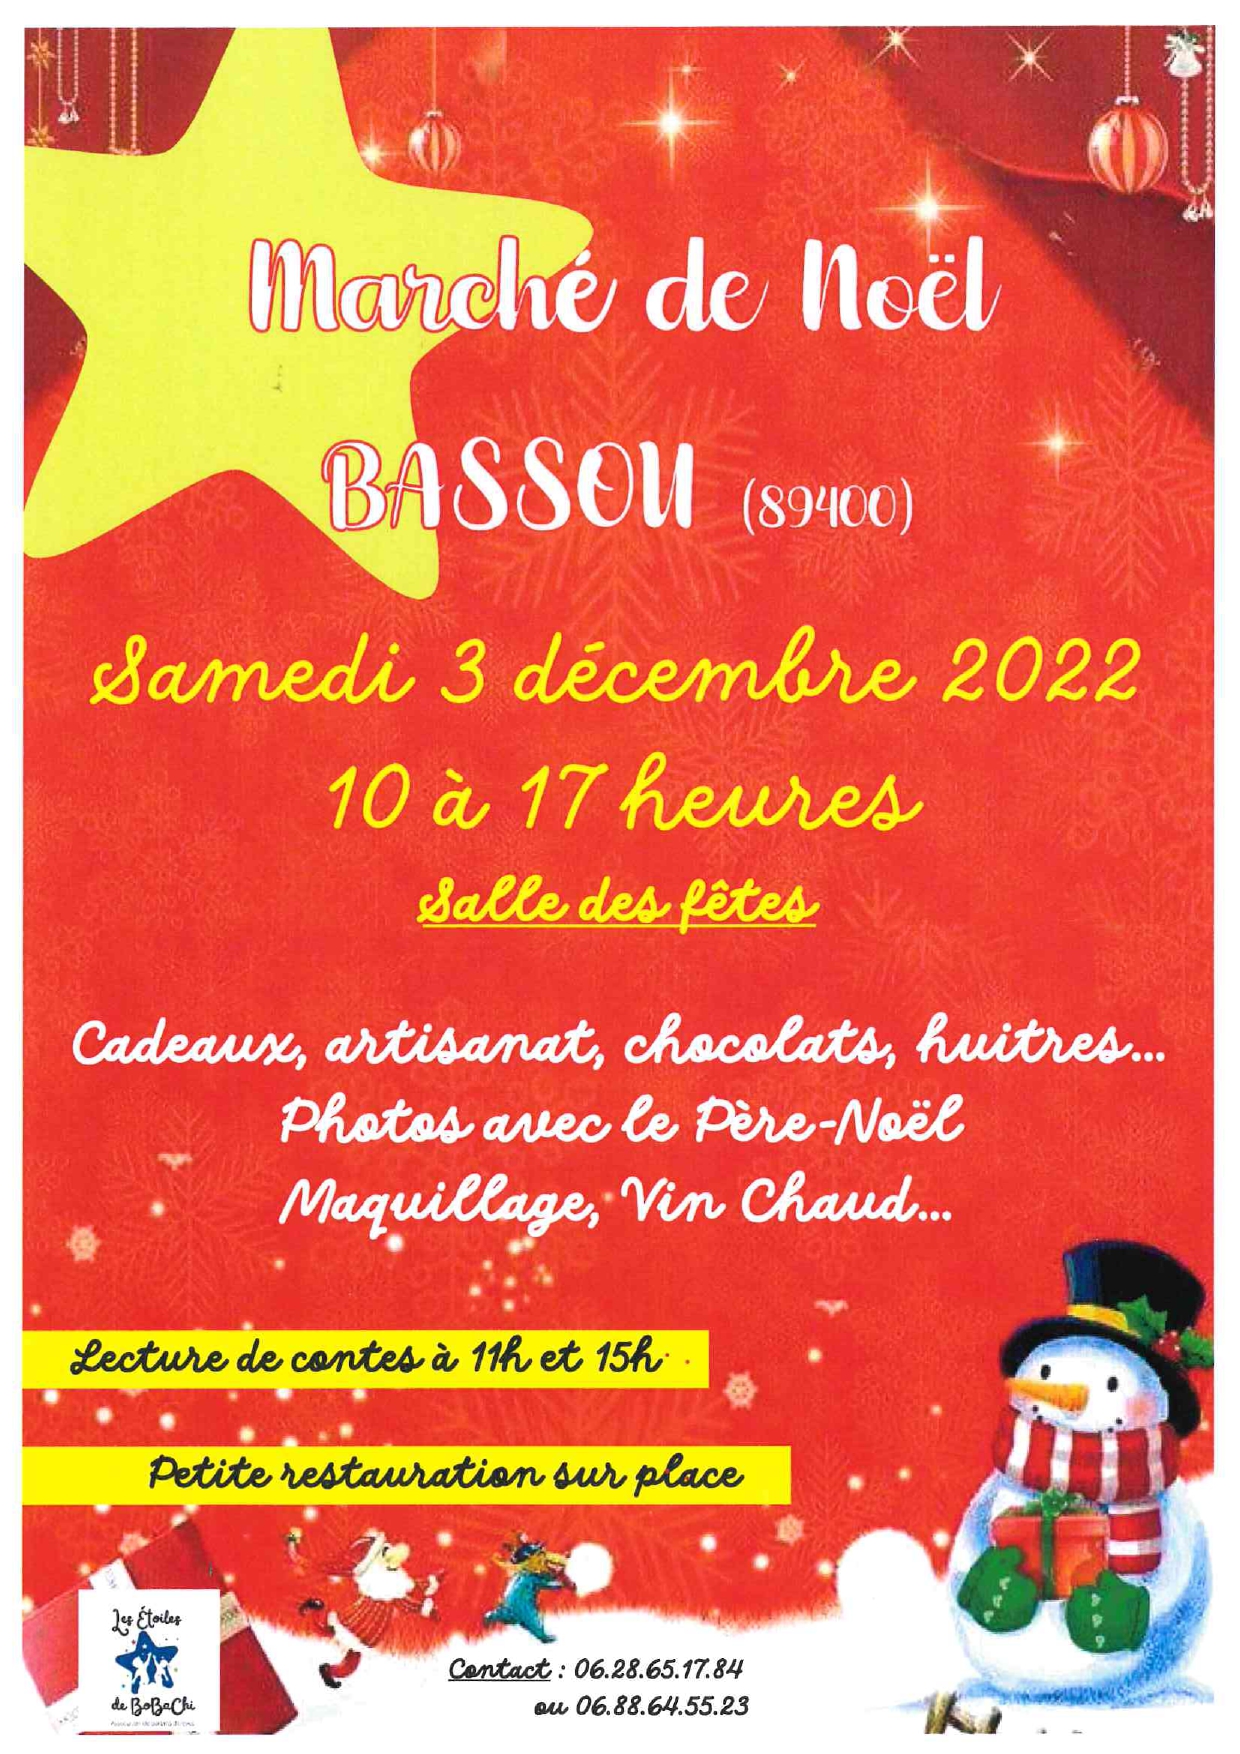 Marché de Noël samedi 3 décembre 2022, de 10h à 17 heures à la salle des Fêtes de Bassou